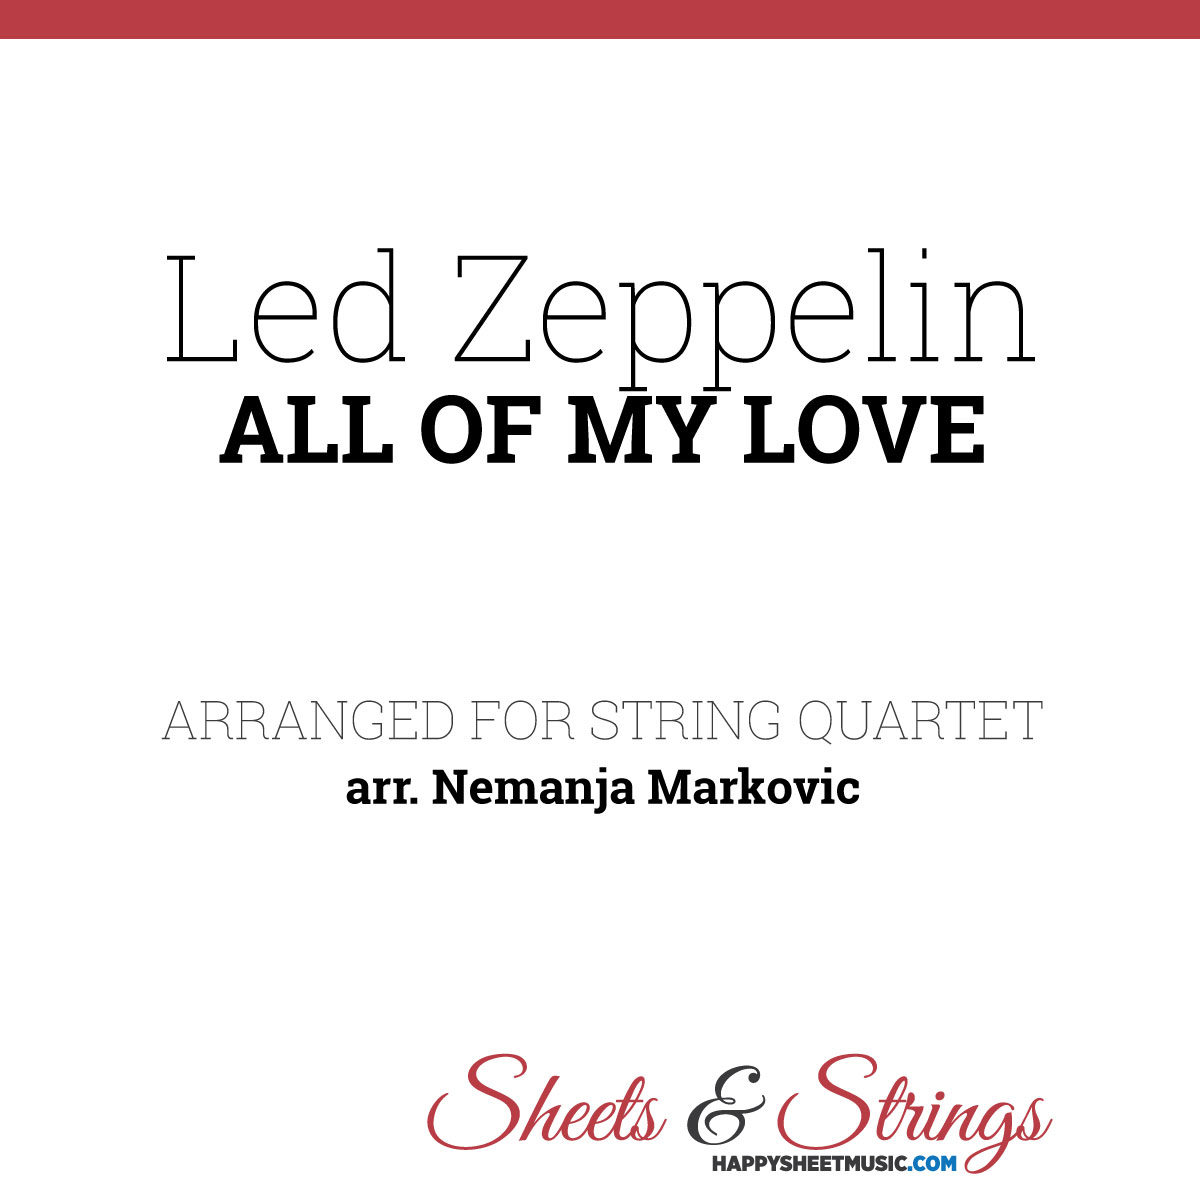 Led Zeppelin - All Of My Love - Sheet Music for String Quartet - Music Arrangement for String Quartet